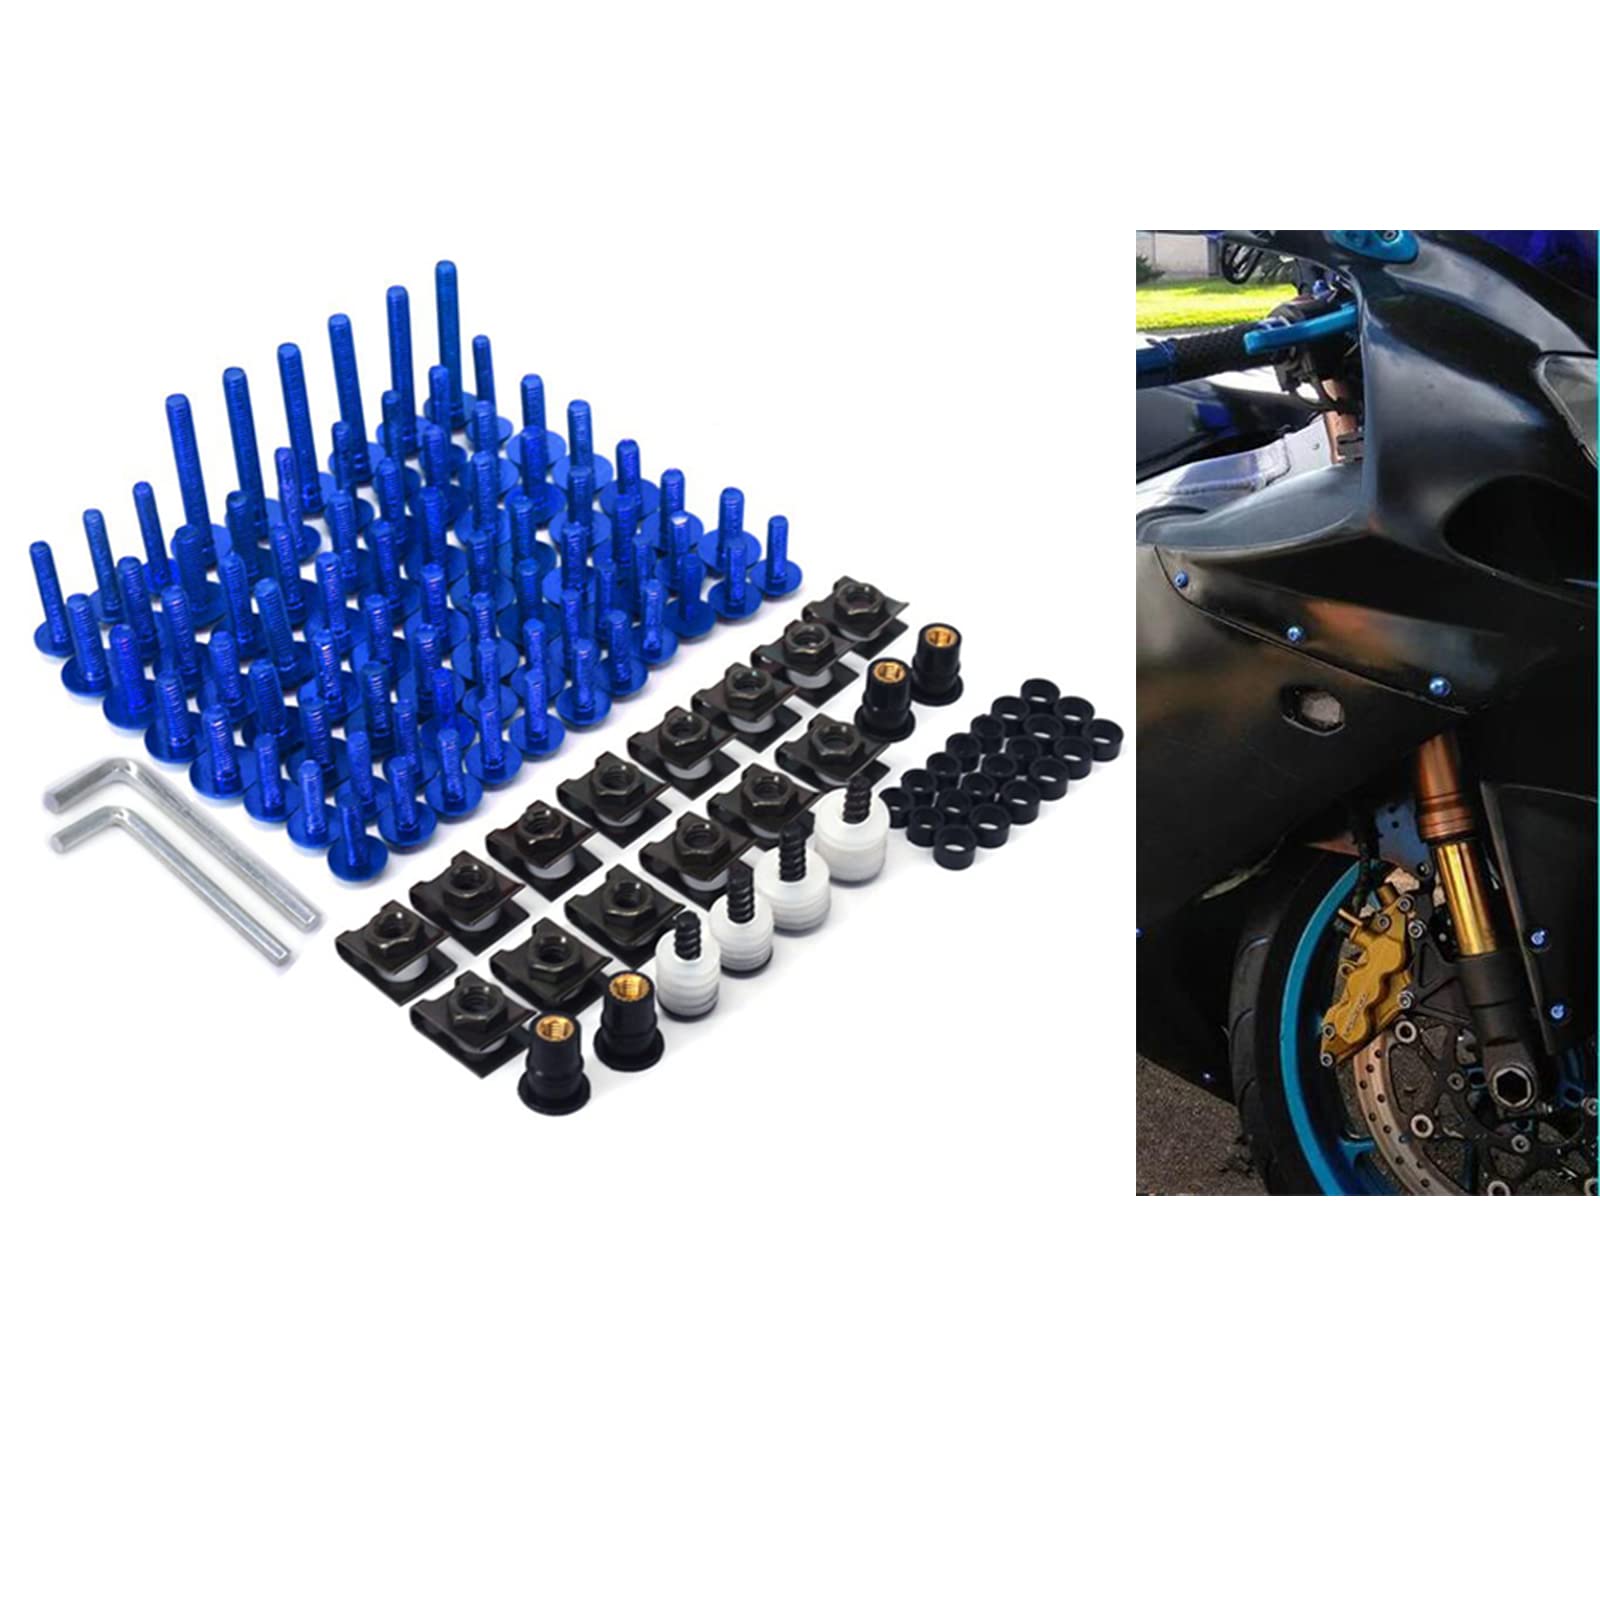 An Xin CNC Aluminium Universal Billet komplette Motorrad Scheibenverkleidungsschrauben Kit Befestigungsclip Karosserie Schrauben Mutter für YZ125 YZ250 YZ250F YZ450F WR250F WR450F (blau) von An Xin